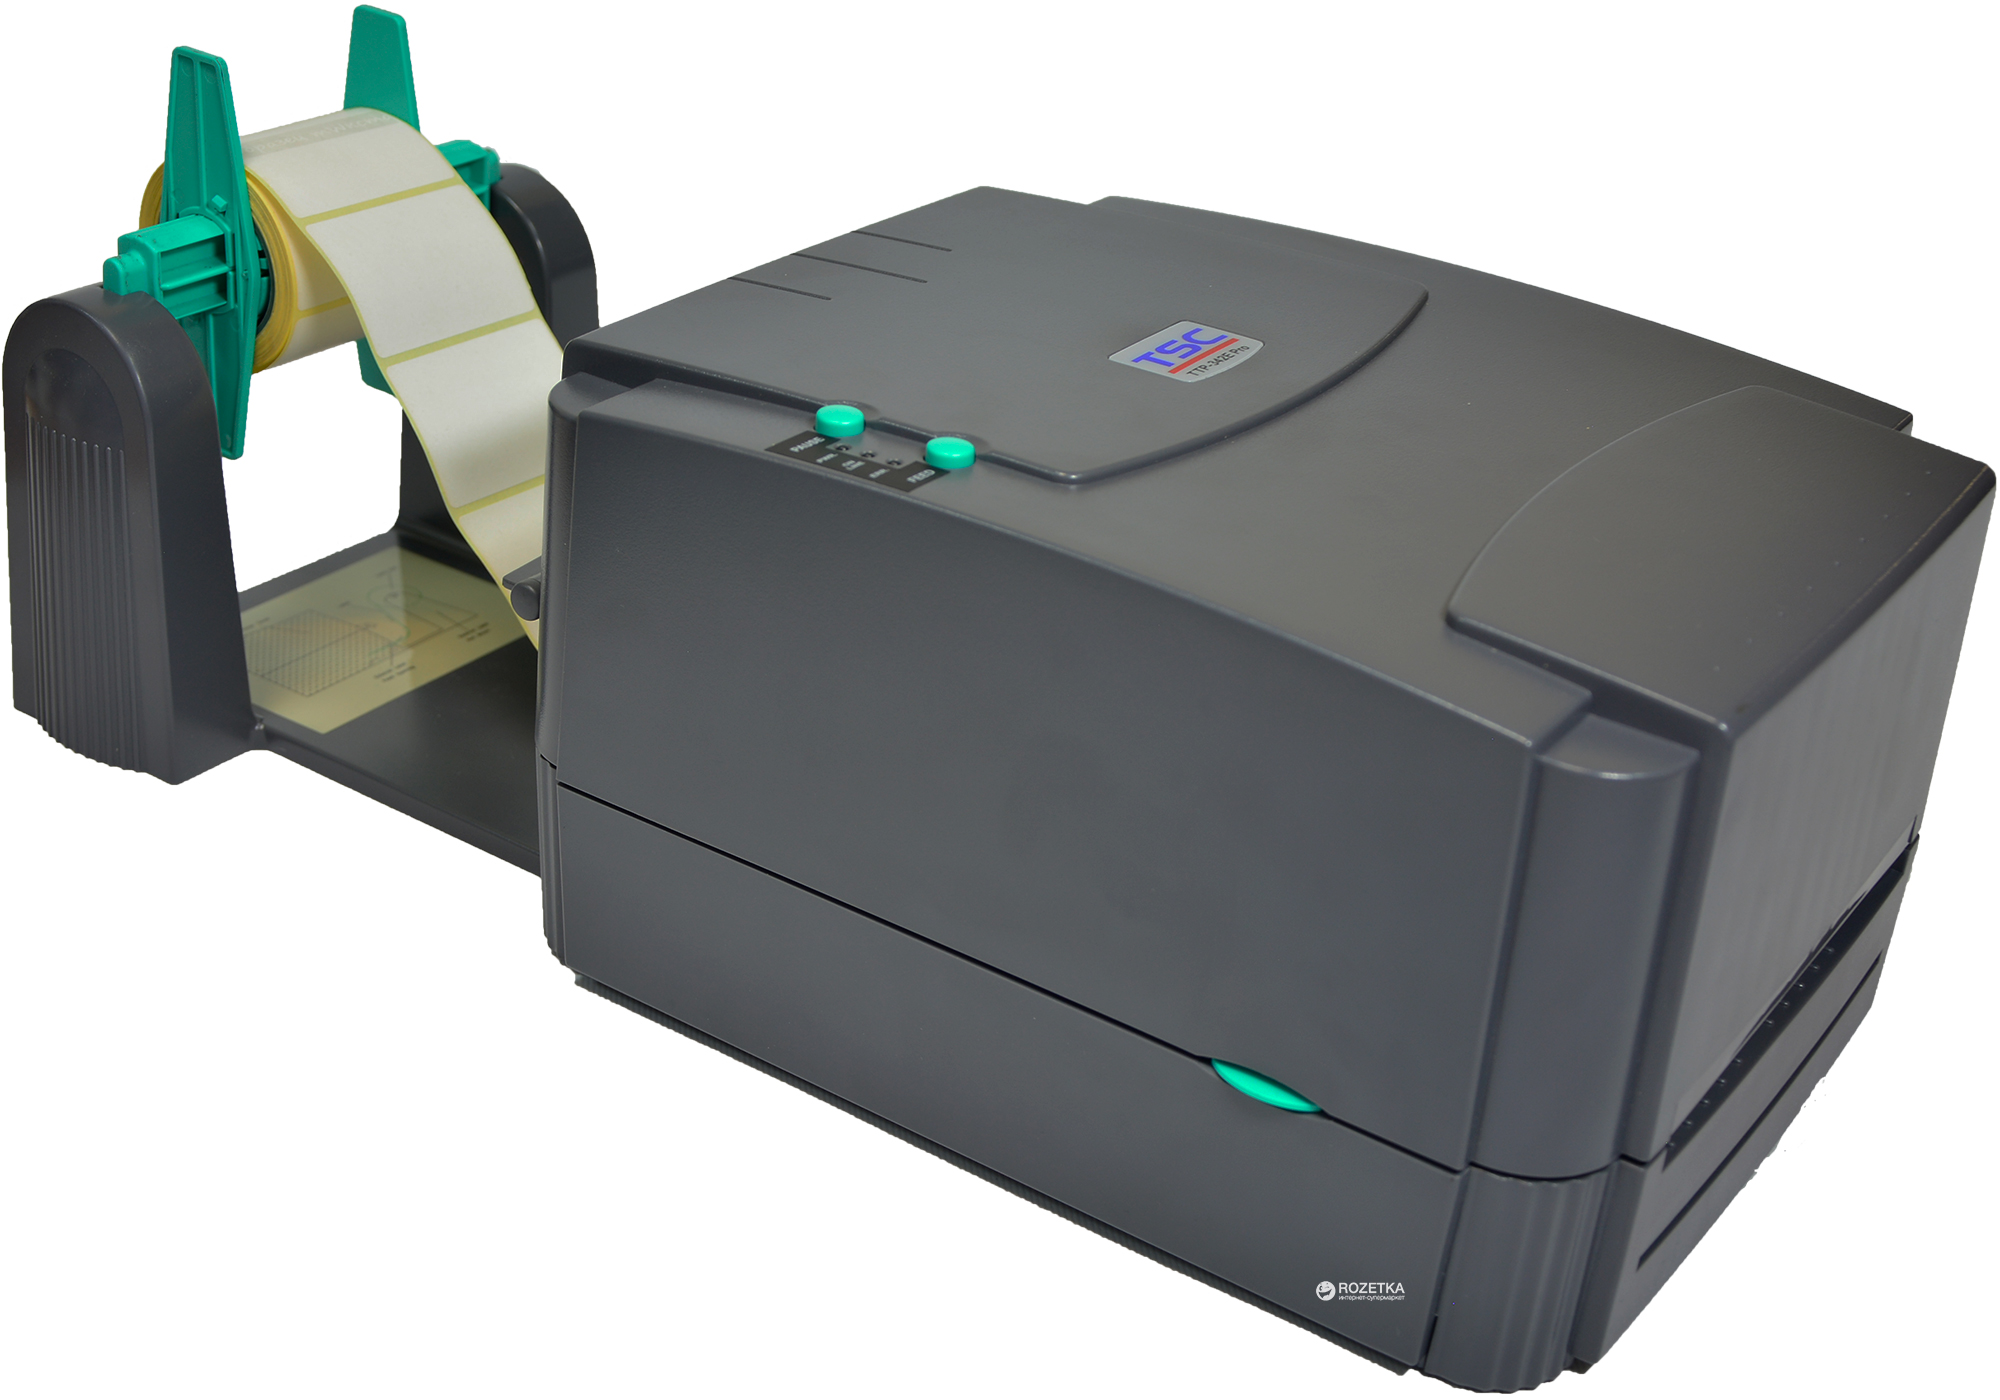 Мини принтер для этикеток. Принтер этикеток TSC. TTP-244 Pro. TSC te210 с отделителем. XP 420b принтер.